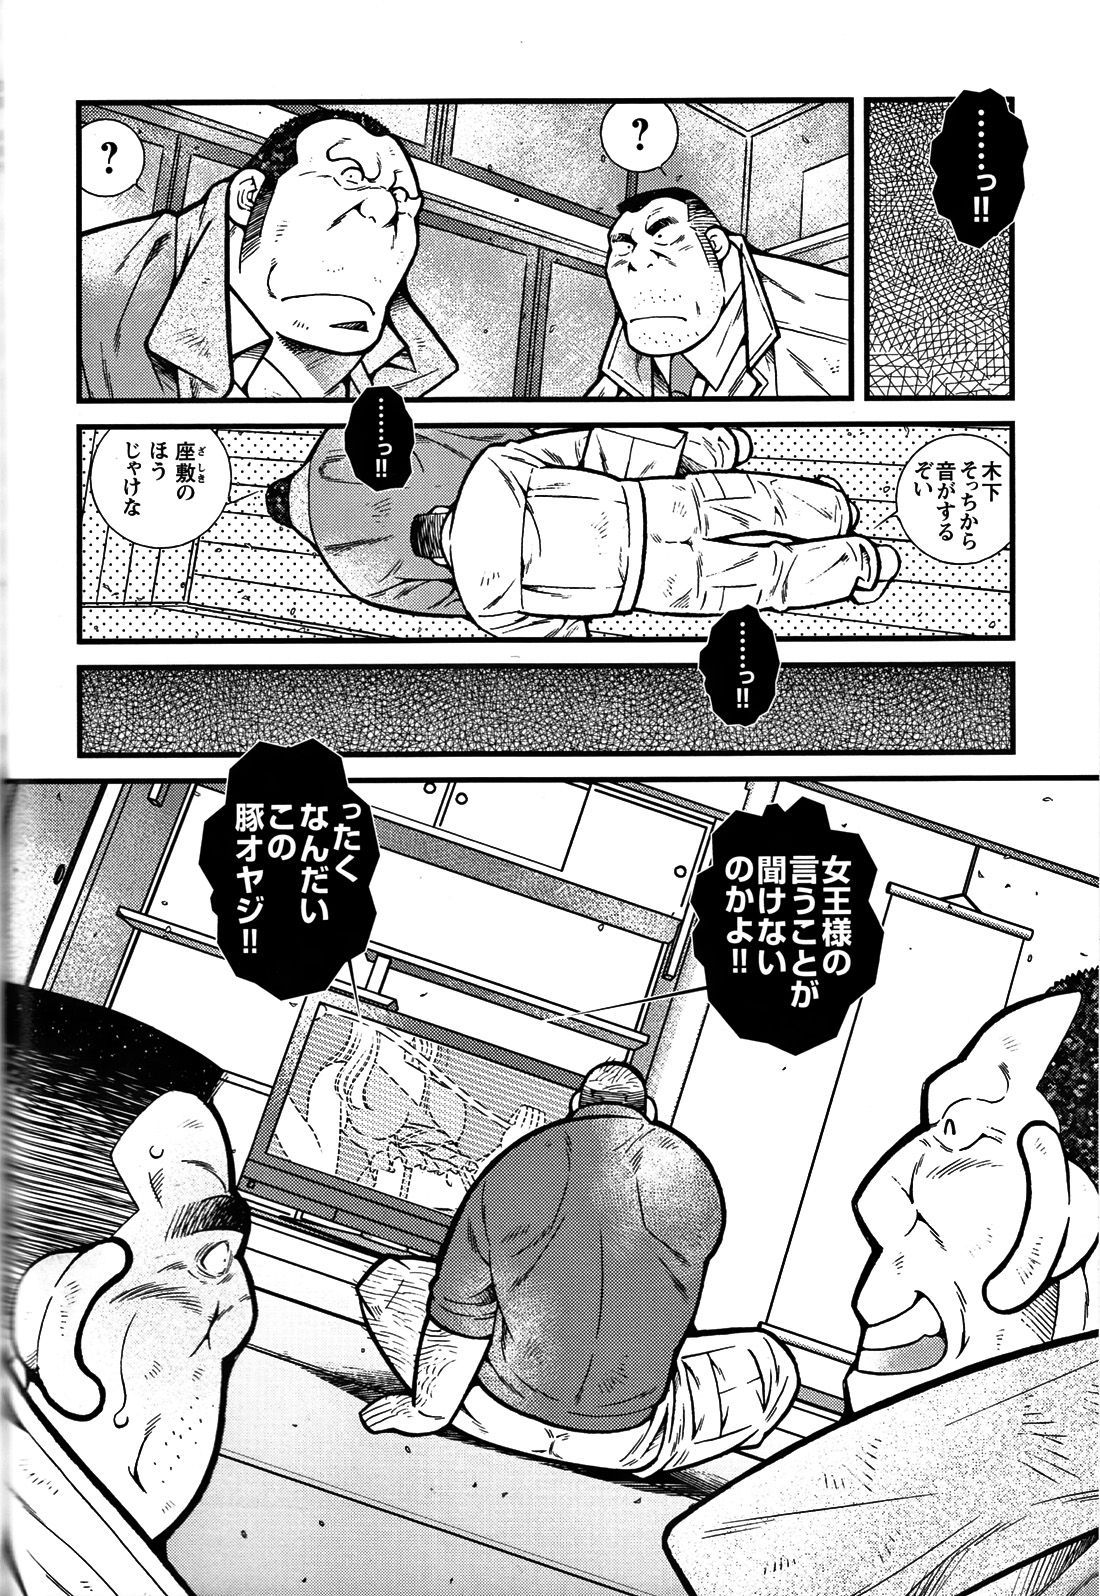 Comic G-men Gaho No. 06 Nikutai Roudousha page 43 full